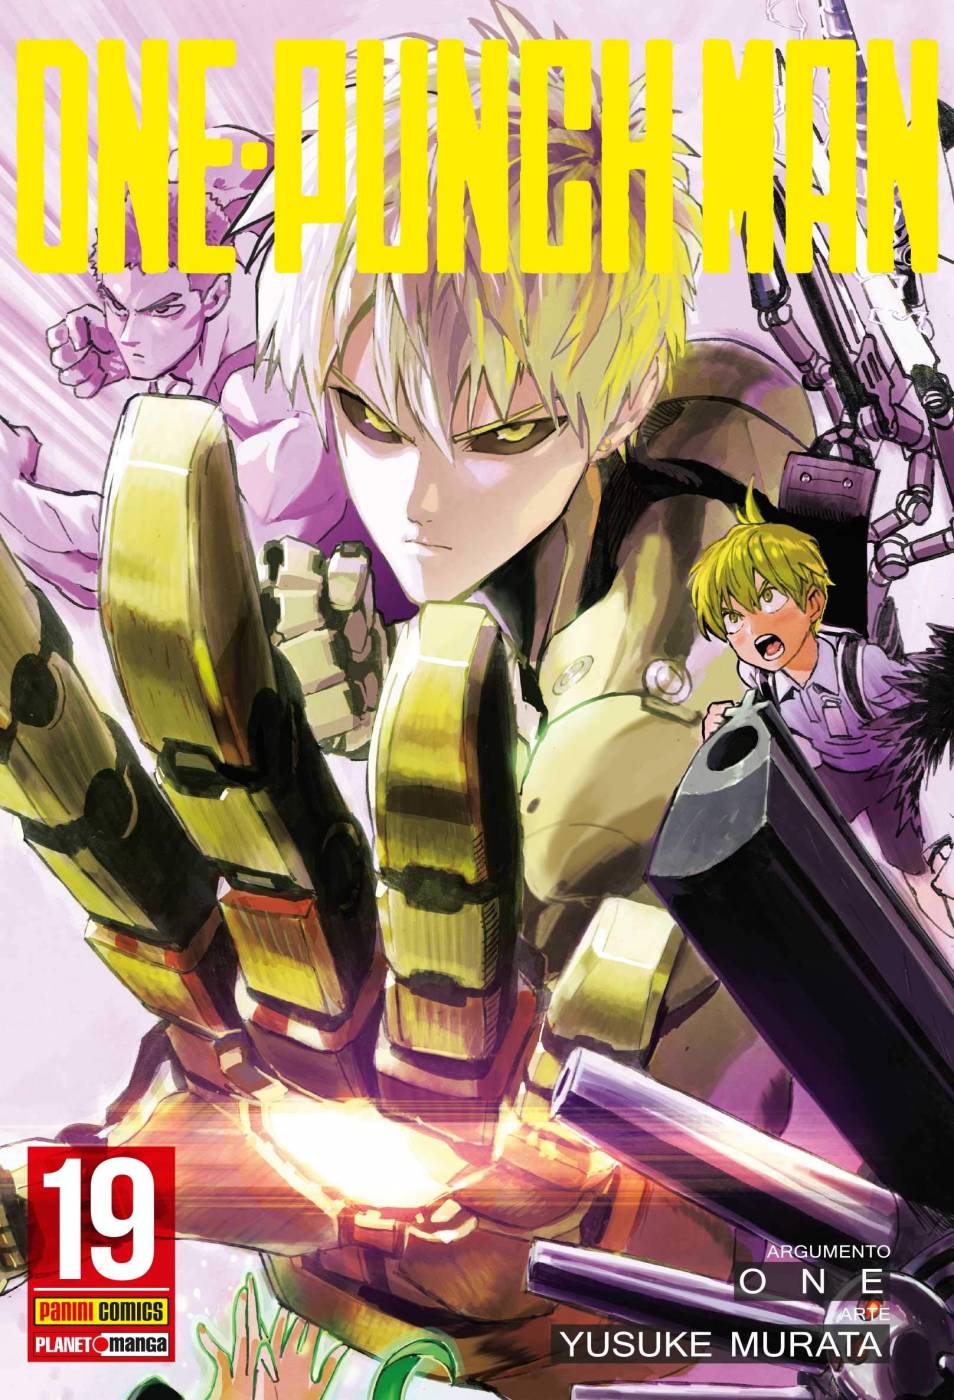 Quadro Decorativo Poster Sword Art Online Anime Meninos em